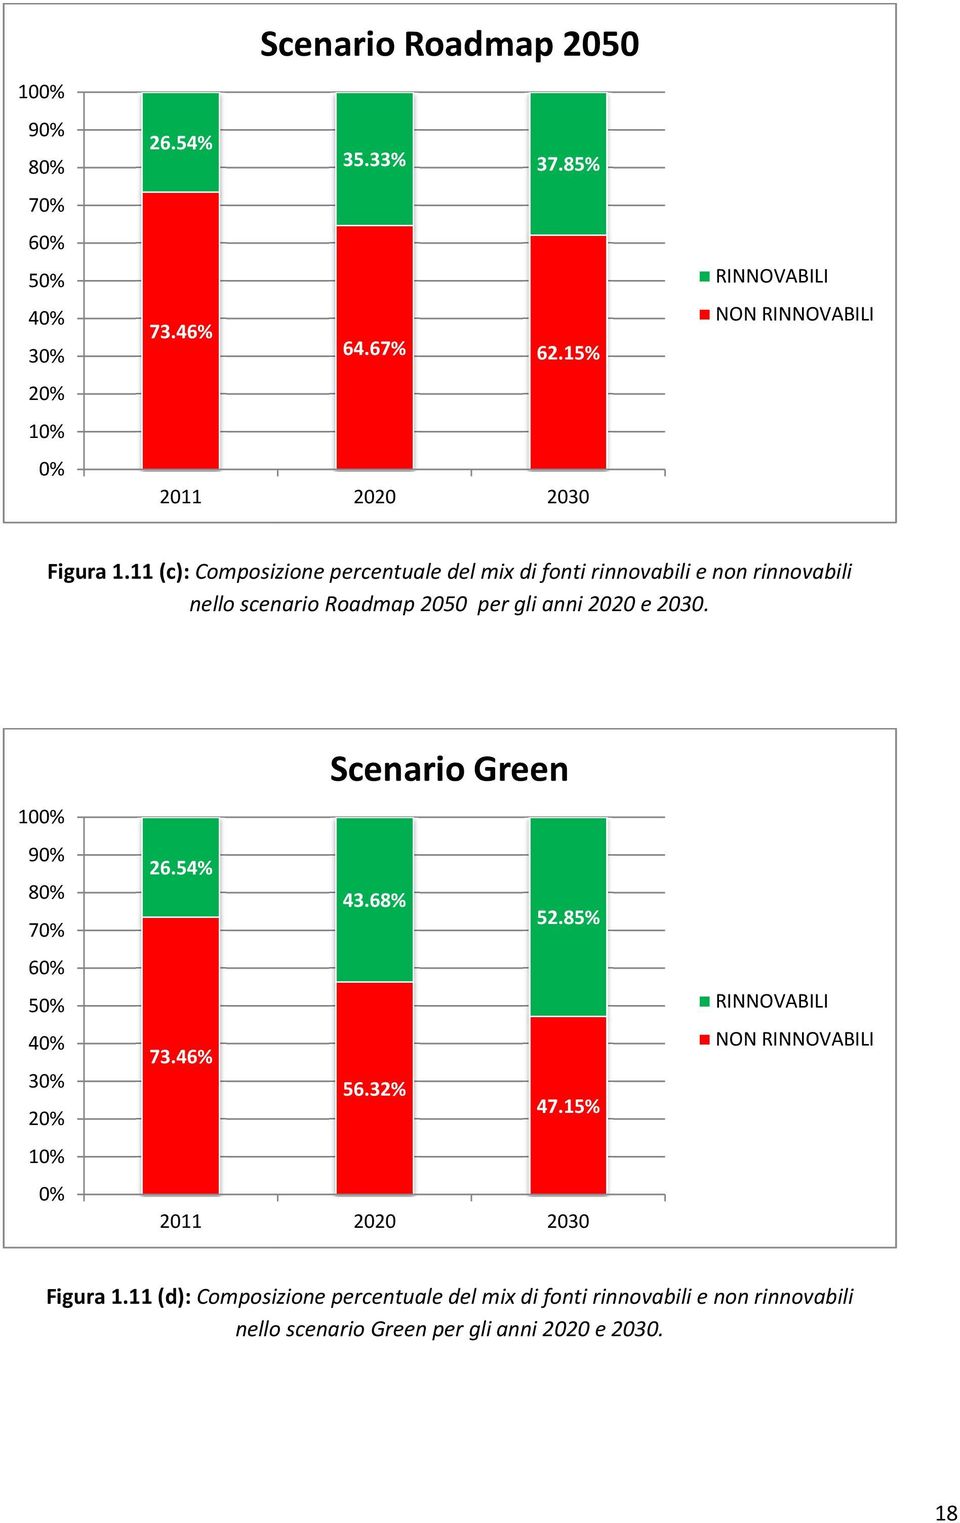 11 (c): Composizione percentuale del mix di fonti rinnovabili e non rinnovabili nello scenario Roadmap 2050 per gli anni 2020 e 2030.